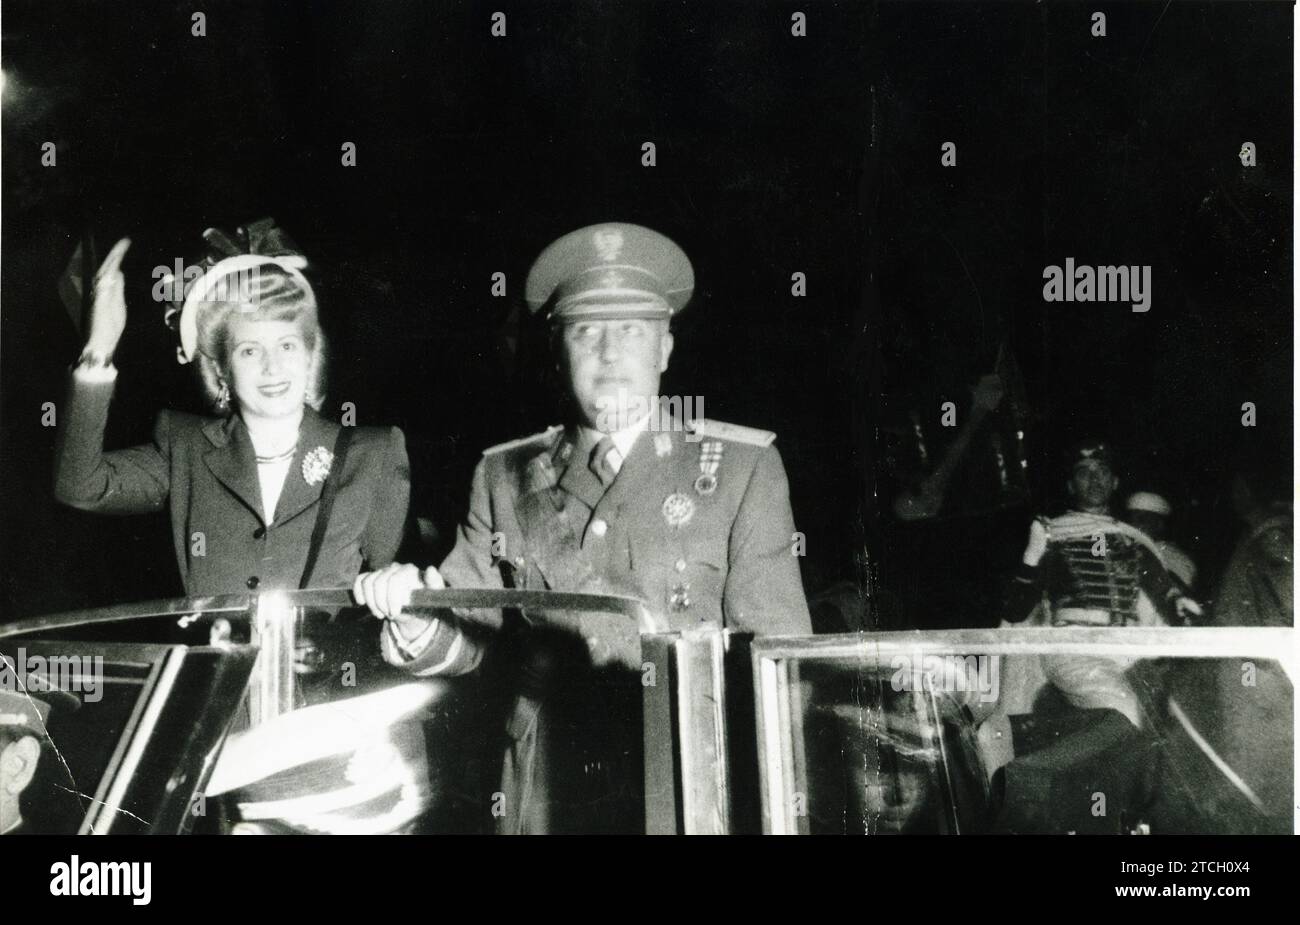 06/05/1947. Eva Duarte de Perón visita le strade di Madrid in auto aperta con il capo di stato spagnolo, salutando il popolo di Madrid. Crediti: Album / Archivo ABC Foto Stock